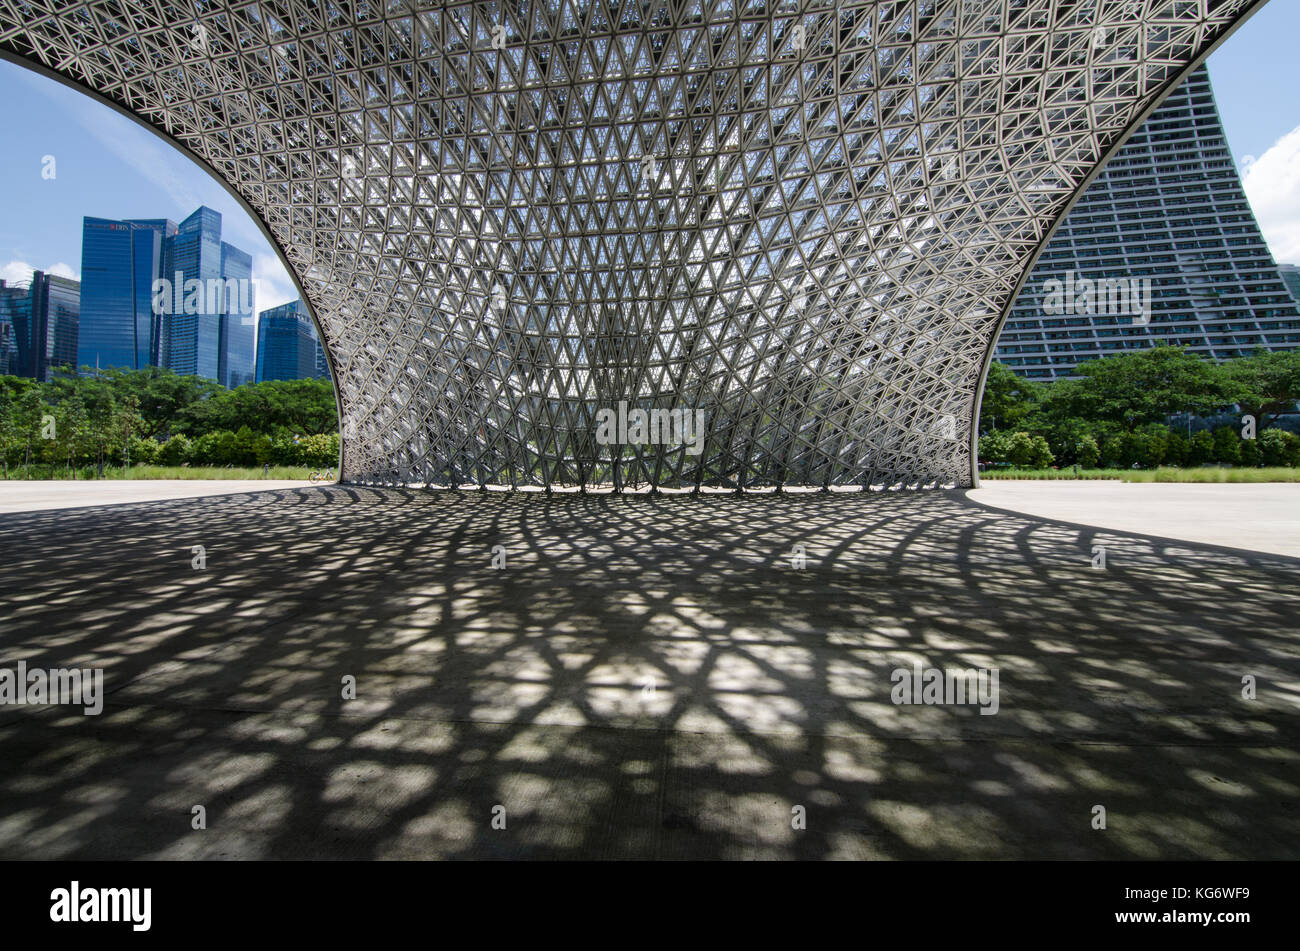 Singapour CBD salon vu de l'avenir Nous joindre Pavillon des expositions. Le pavillon sont en aluminium et non pas a se transformer en un monument permanent. Banque D'Images